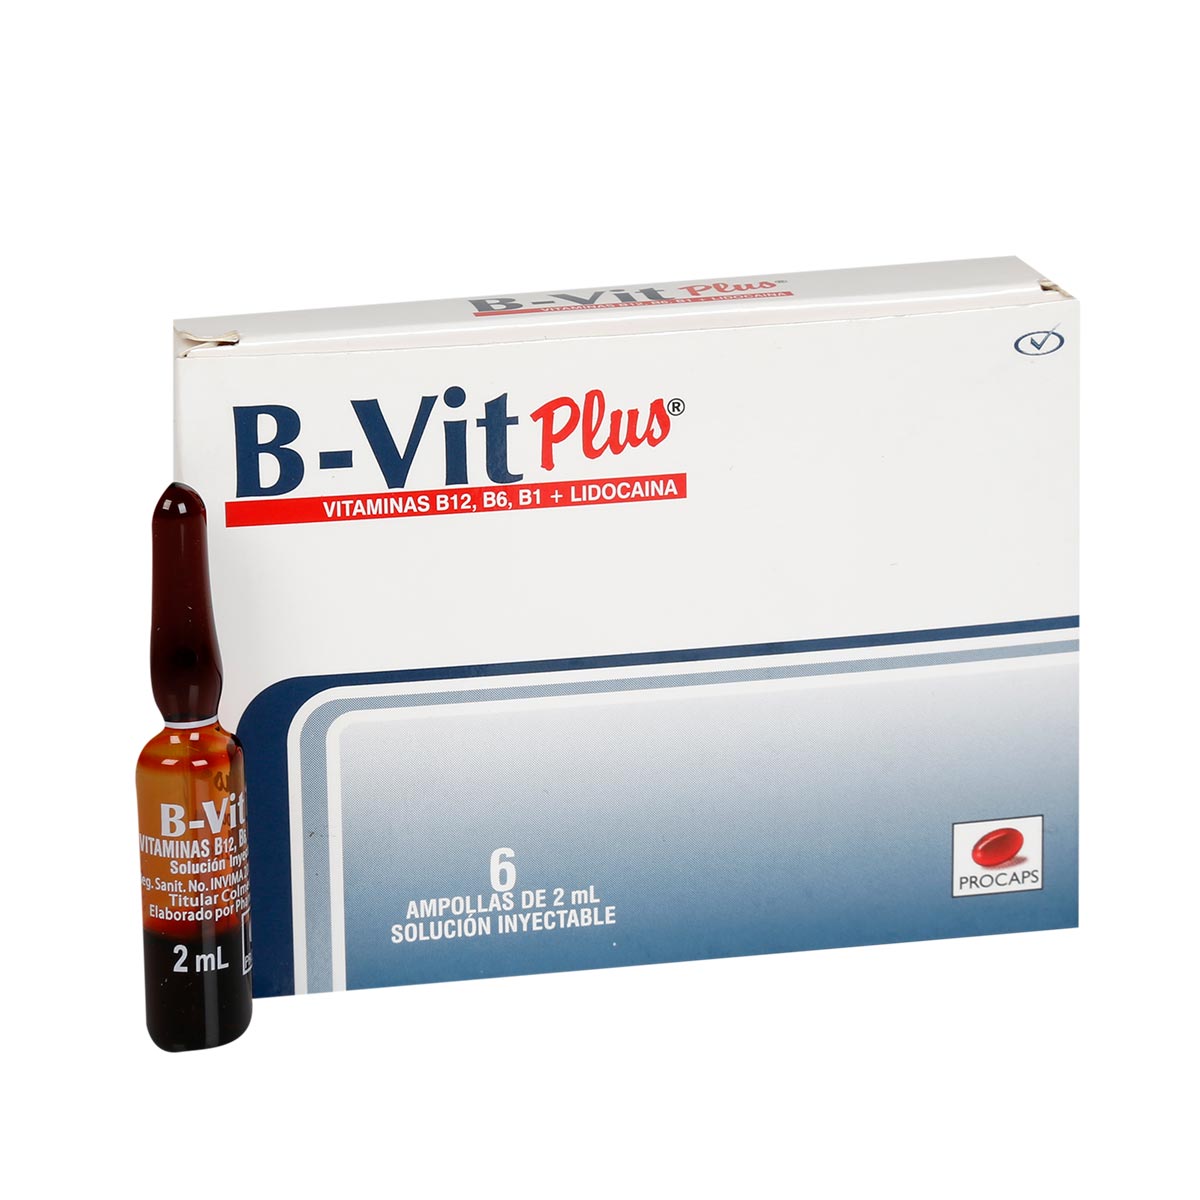 B Vit Plus Soluci N Inyectable Theme Farmacias Theme Farmacias